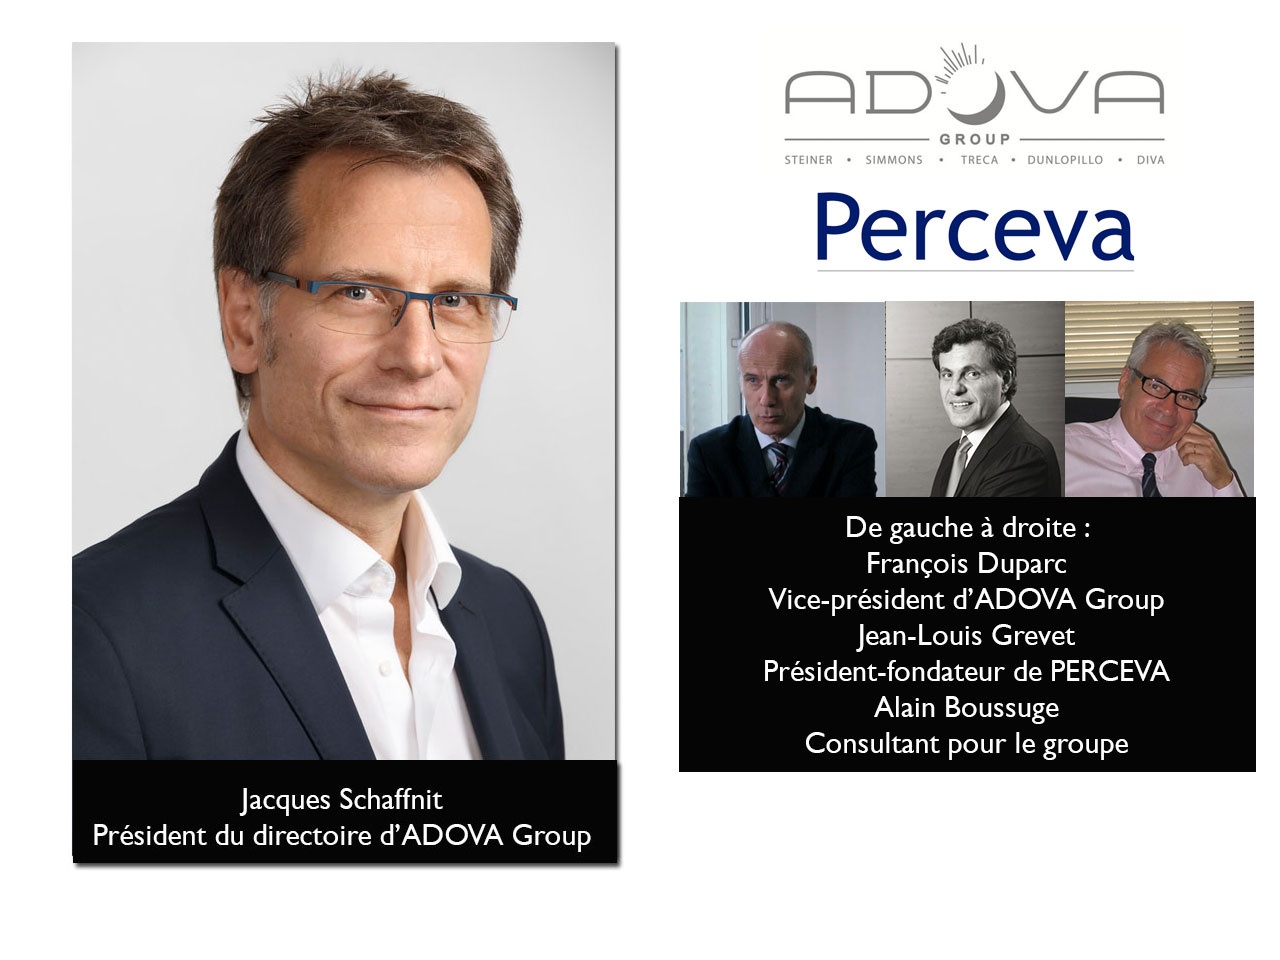 Jacques Schaffnit nommé Président du directoire d’ADOVA Group